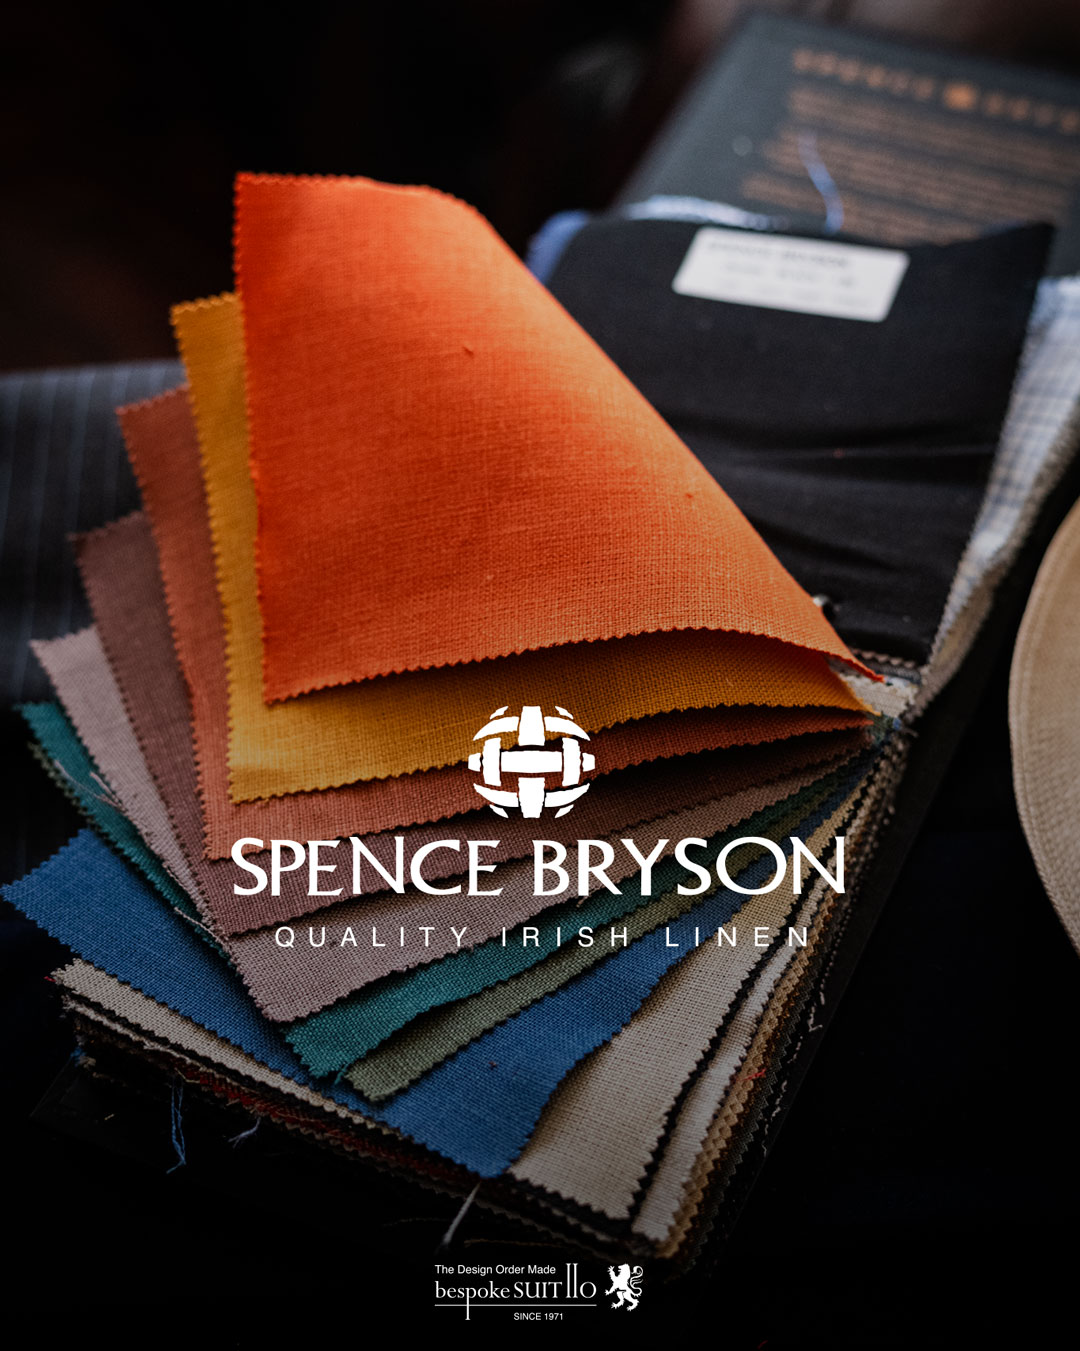 Spence Bryson（スペンス・ブライソン）Irish Linen（アイリッシュリネン）春夏限定なイメージですが温暖化の昨今は春から秋までスリーシーズン着回しできますね。スペンスブライソンは美しい光沢と風合いから世界最高のリネンと称される、アイルランド製の『アイリッシュリネン』の大手メーカーです。その真の品質の良さから英国王室で重用され、世界のファッション界でもリネンといえばスペンスブライソンと代名詞を付けて語られるほどです。スペンスブライソン社は1891年、古来よりリネンが根付いた場所であったアイルランド島北東部に位置するアルスター地方に設立されました。時を同じくして1880年設立のアルスターウィーバー社もリネンの産業化を推進し、スピニング、ウィーヴィング、ダイイングとフィニッシィングを自社一貫で行い、アイリッシュリネンサプライヤーとしての地位を築きました。そして1992年両社統合の末、世界的なアイリッシュリネンメーカーとなりました。 スペンスブライソンが供給する生地は全て100%アイルランドのリネンで作られています。アイリッシュリネンは、リネンの特徴の一つでもある防カビ性と雑菌の繁殖を抑え臭いも軽減するという長所も併せ持っています。また今日に至るなかで同社は世界規模のエコロジー事業も展開しており、その代表例としてハロッズのコーティングバッグの製造があげられます。